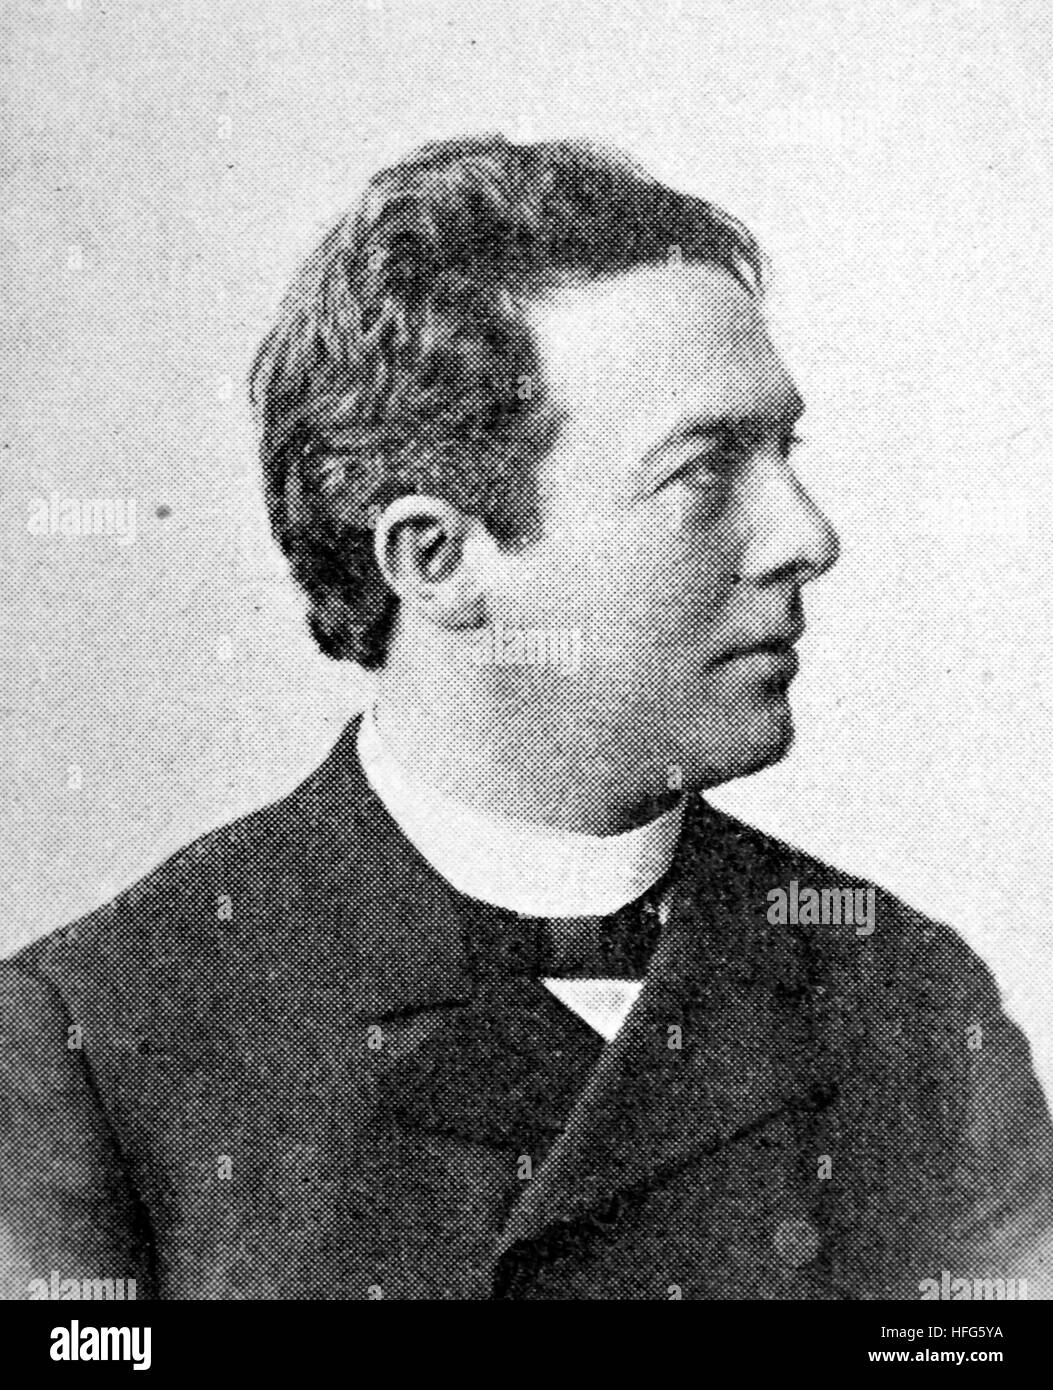 Maximilian Ludwig, Geboren 1847, war ein deutscher Schauspieler, Reproduktion Foto aus dem Jahr 1895, digital verbessert Stockfoto